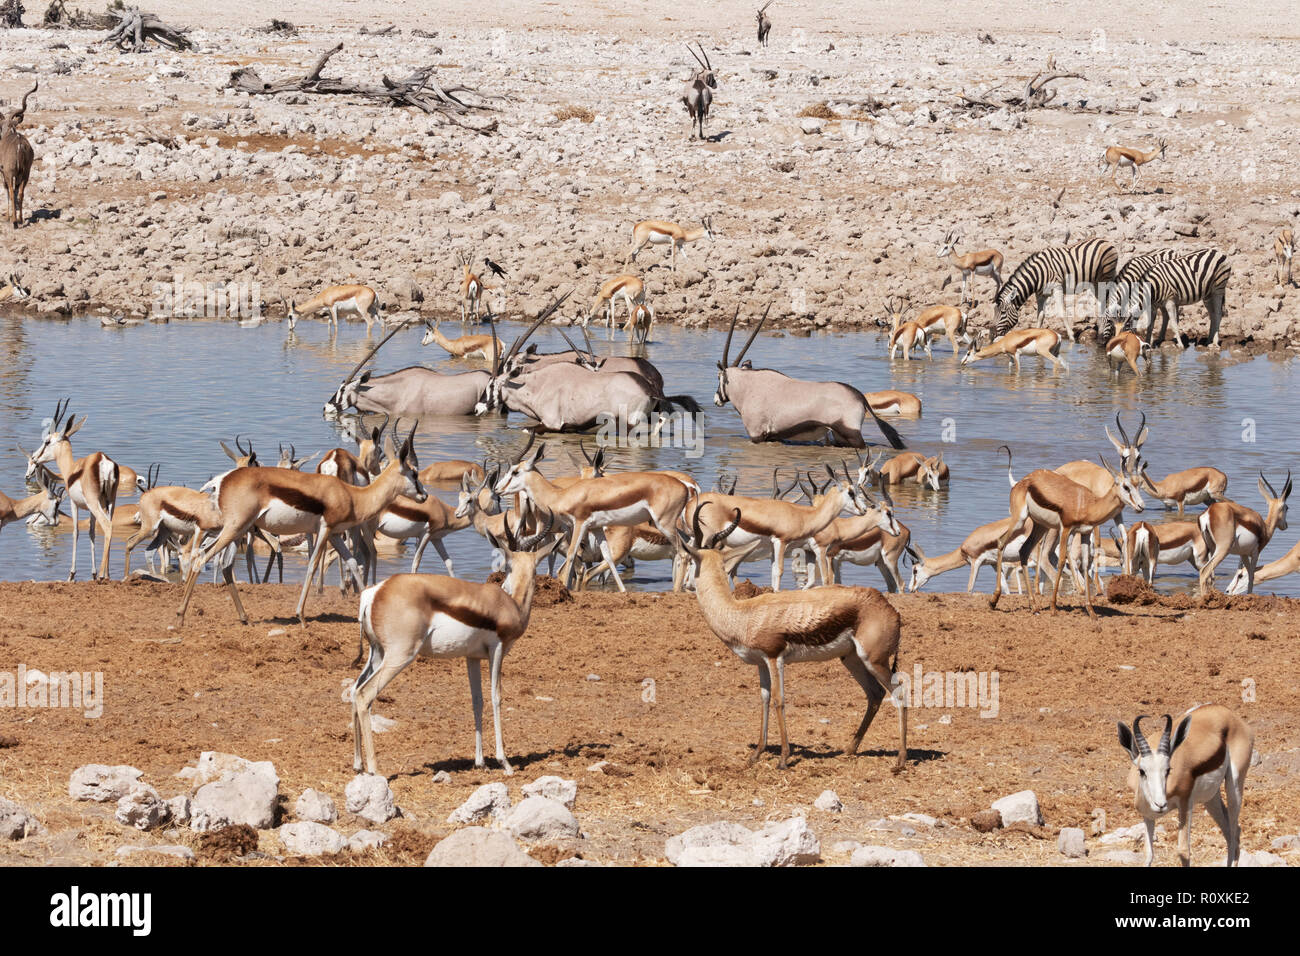 Namibia wilde Tiere - eine Vielzahl der afrikanischen Tierwelt rund um ein Wasserloch, Okaukuejo Camp, Etosha National Park, Namibia, Afrika Stockfoto